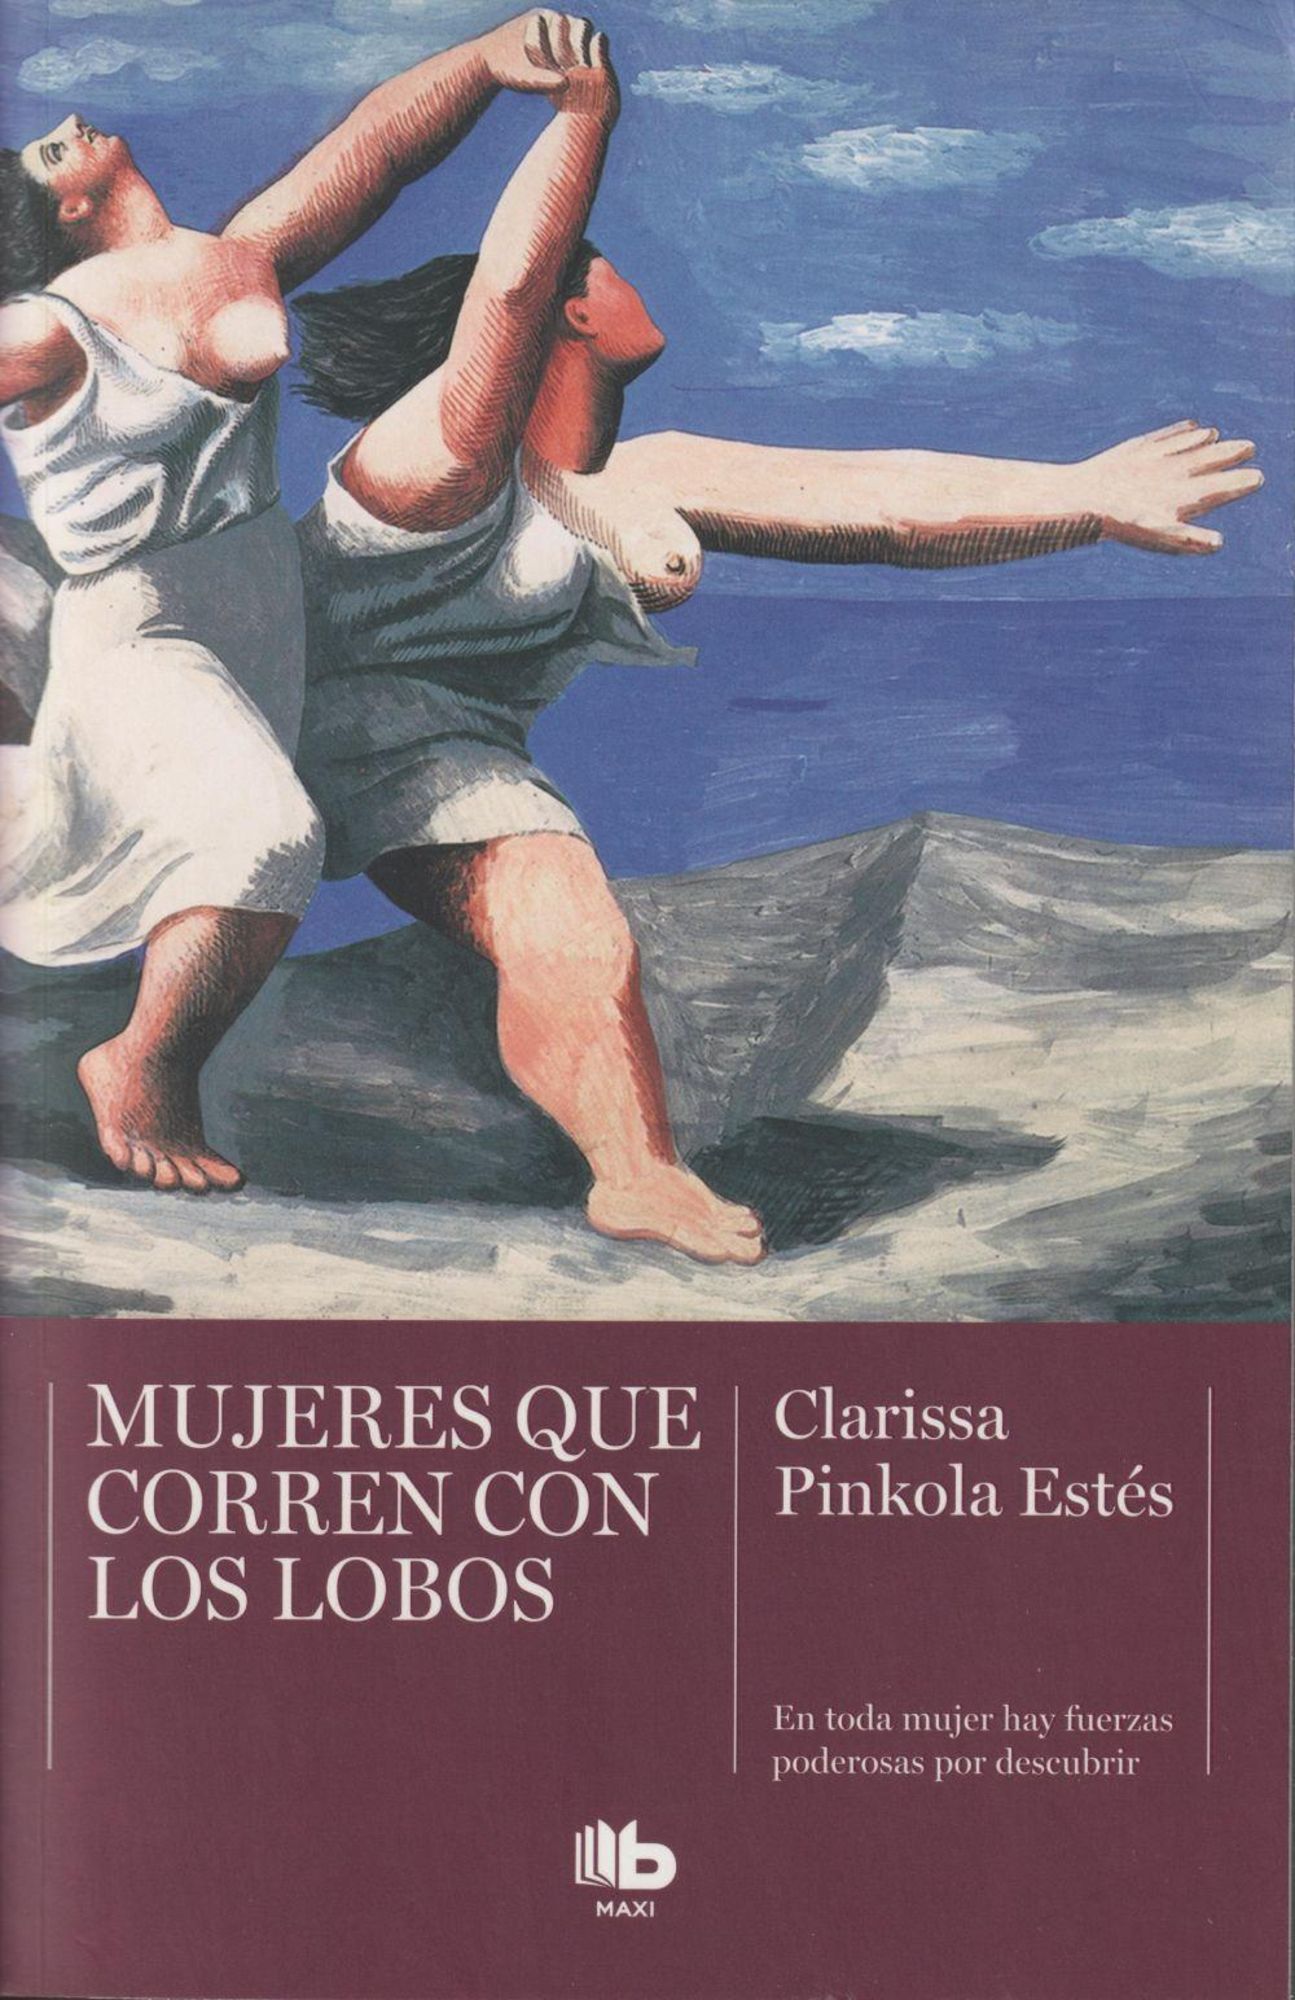 Nadia Betina Herencia on Instagram: 📚 Libro: Mujeres que corren con lobos  💛 Autor: Clarissa Pinkola Estés